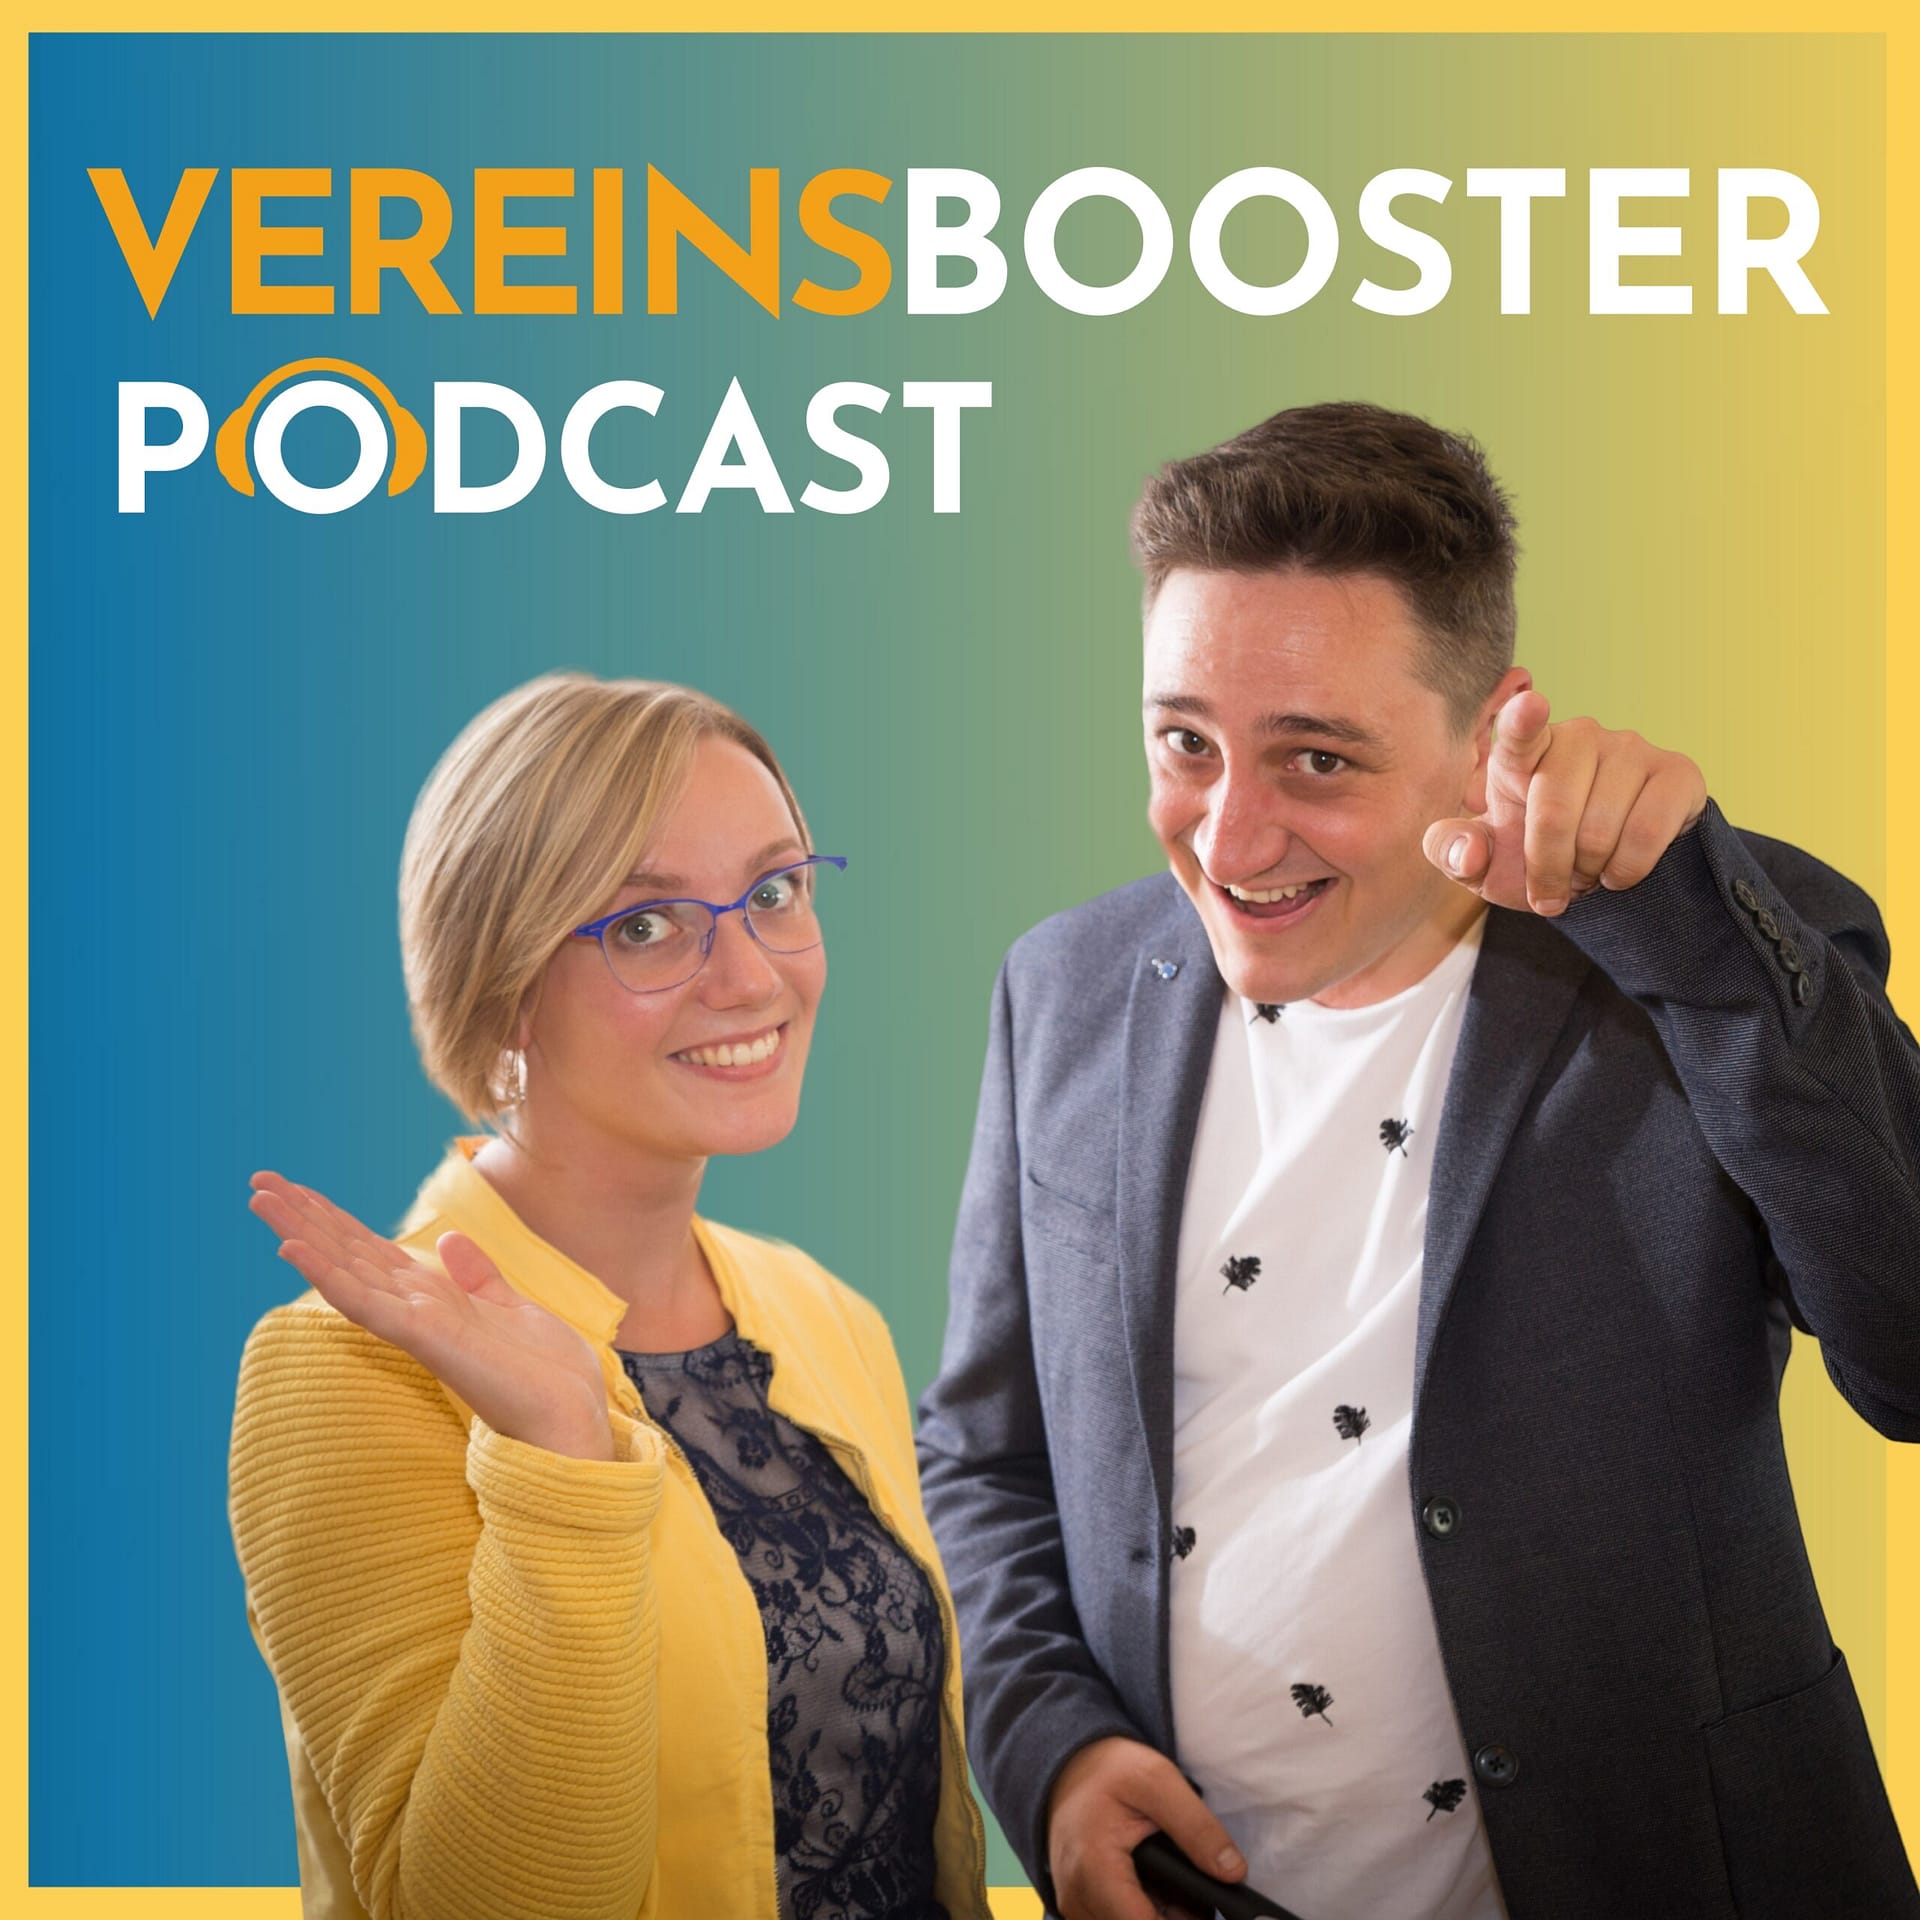 Teil 2: Traditionen leben - Barbara Marksteiner und Sabine Grünberger von der Goldhauben Gruppe in Oberösterreich podcast vereinsbooster cover 2023 highresolution scaled